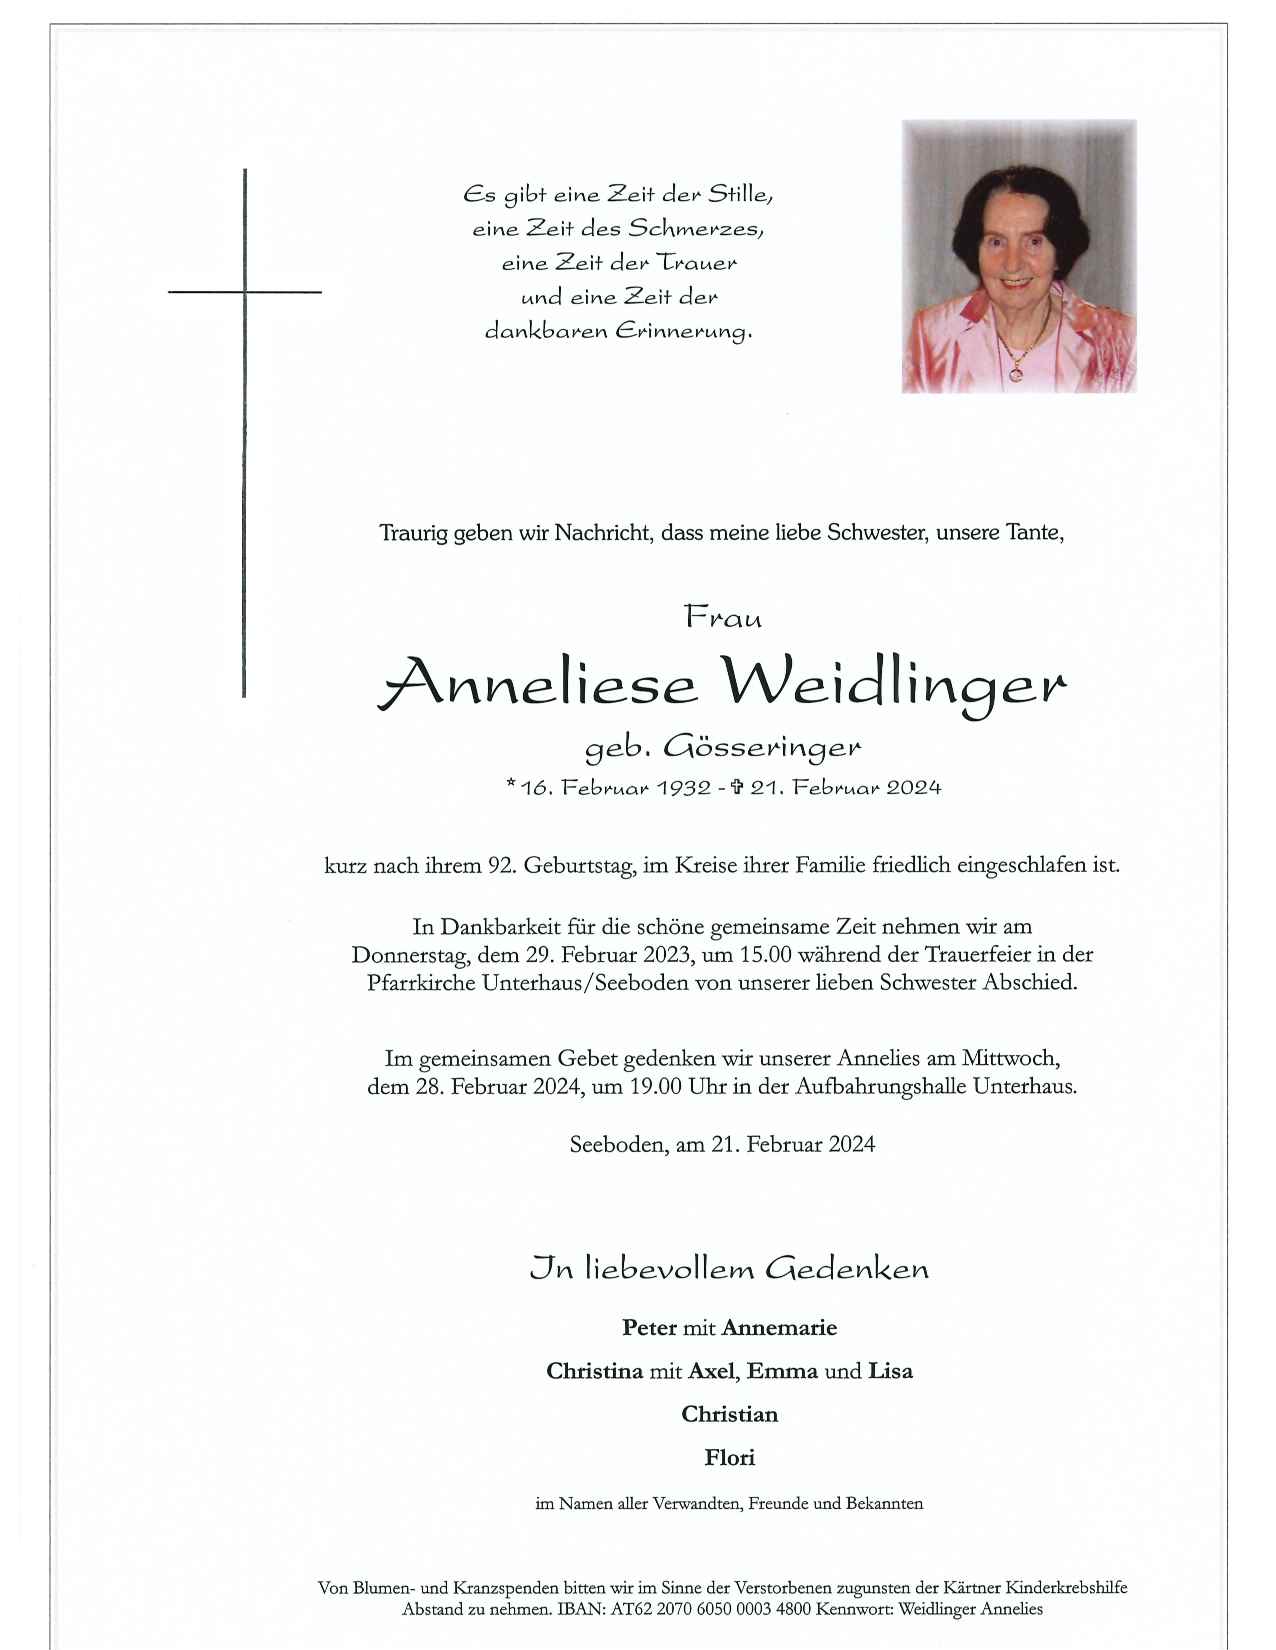 Anneliese Weidlinger